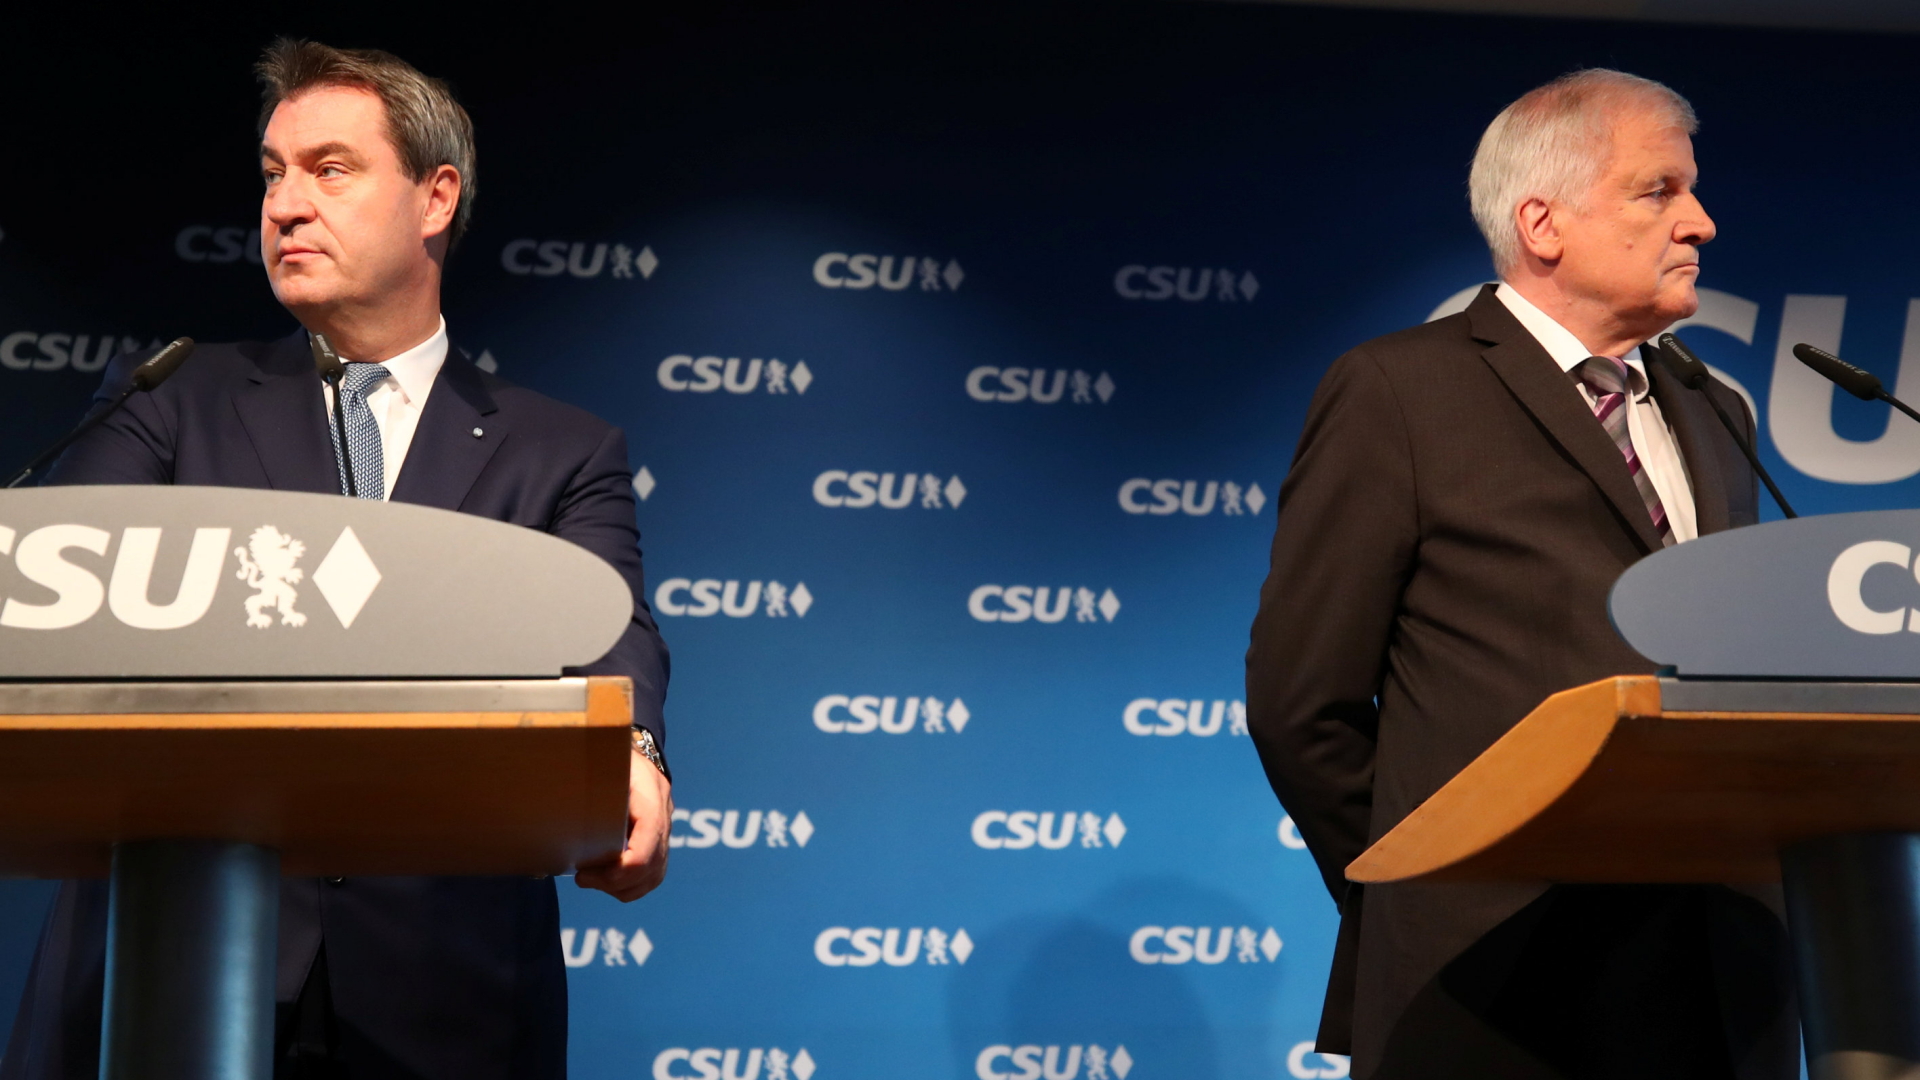 Der bayerische Ministerpräsident Markus Söder und CSU -Chef Horst Seehofer, rechts. | Bildquelle: REUTERS